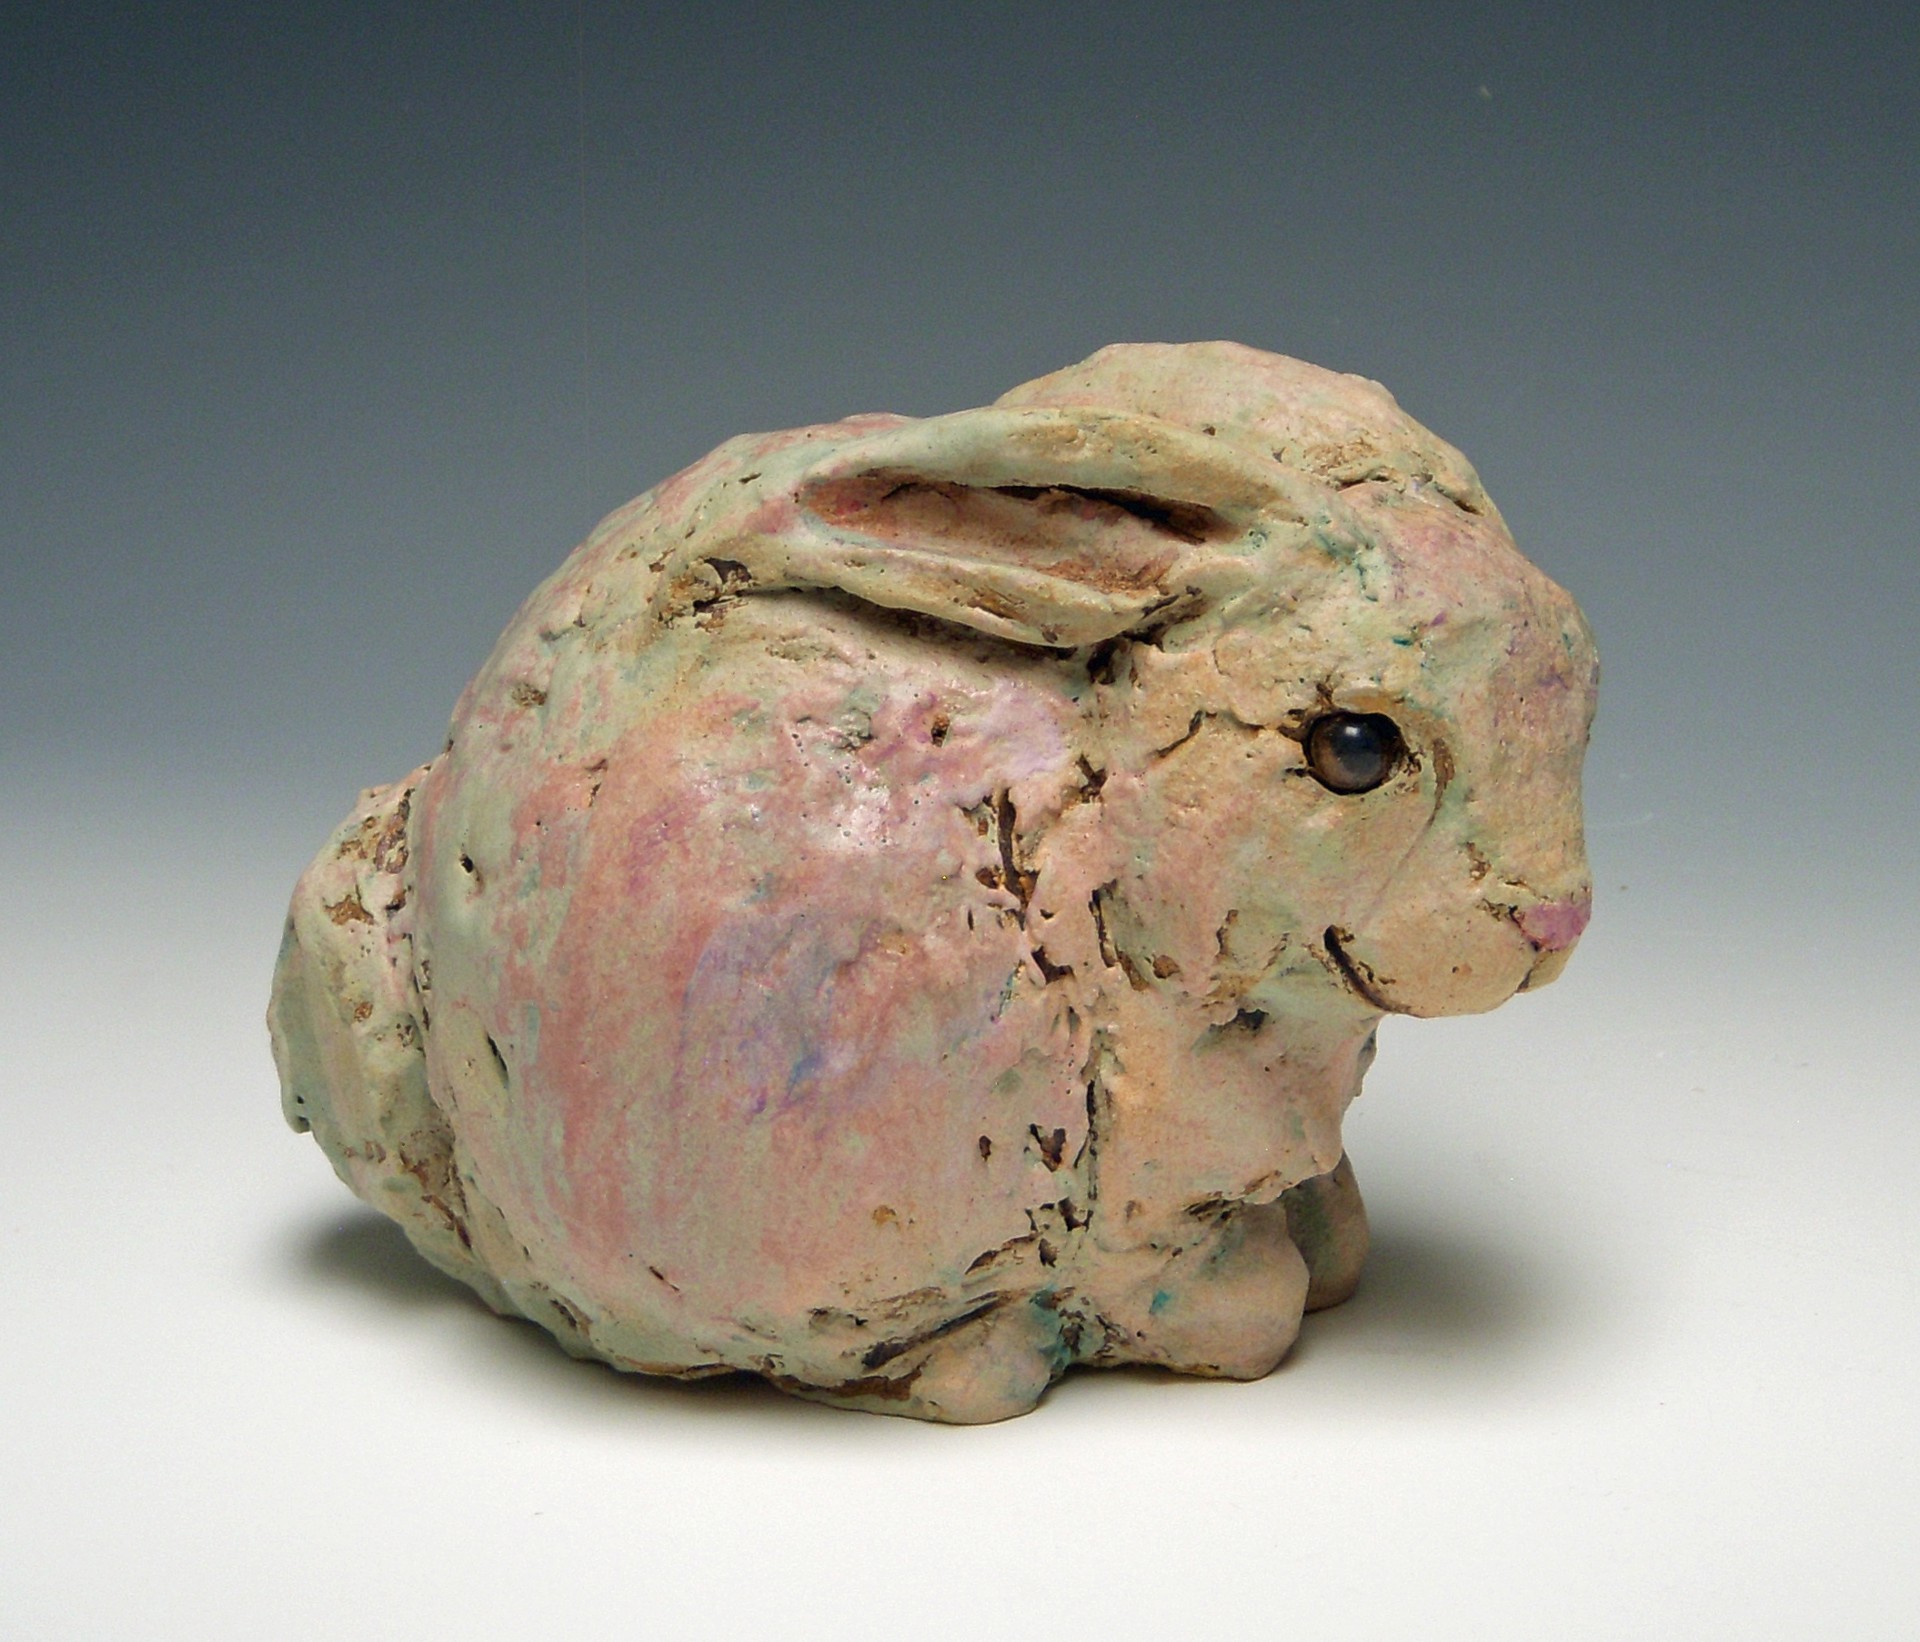 Huddle (small bunny) by Kari Rives